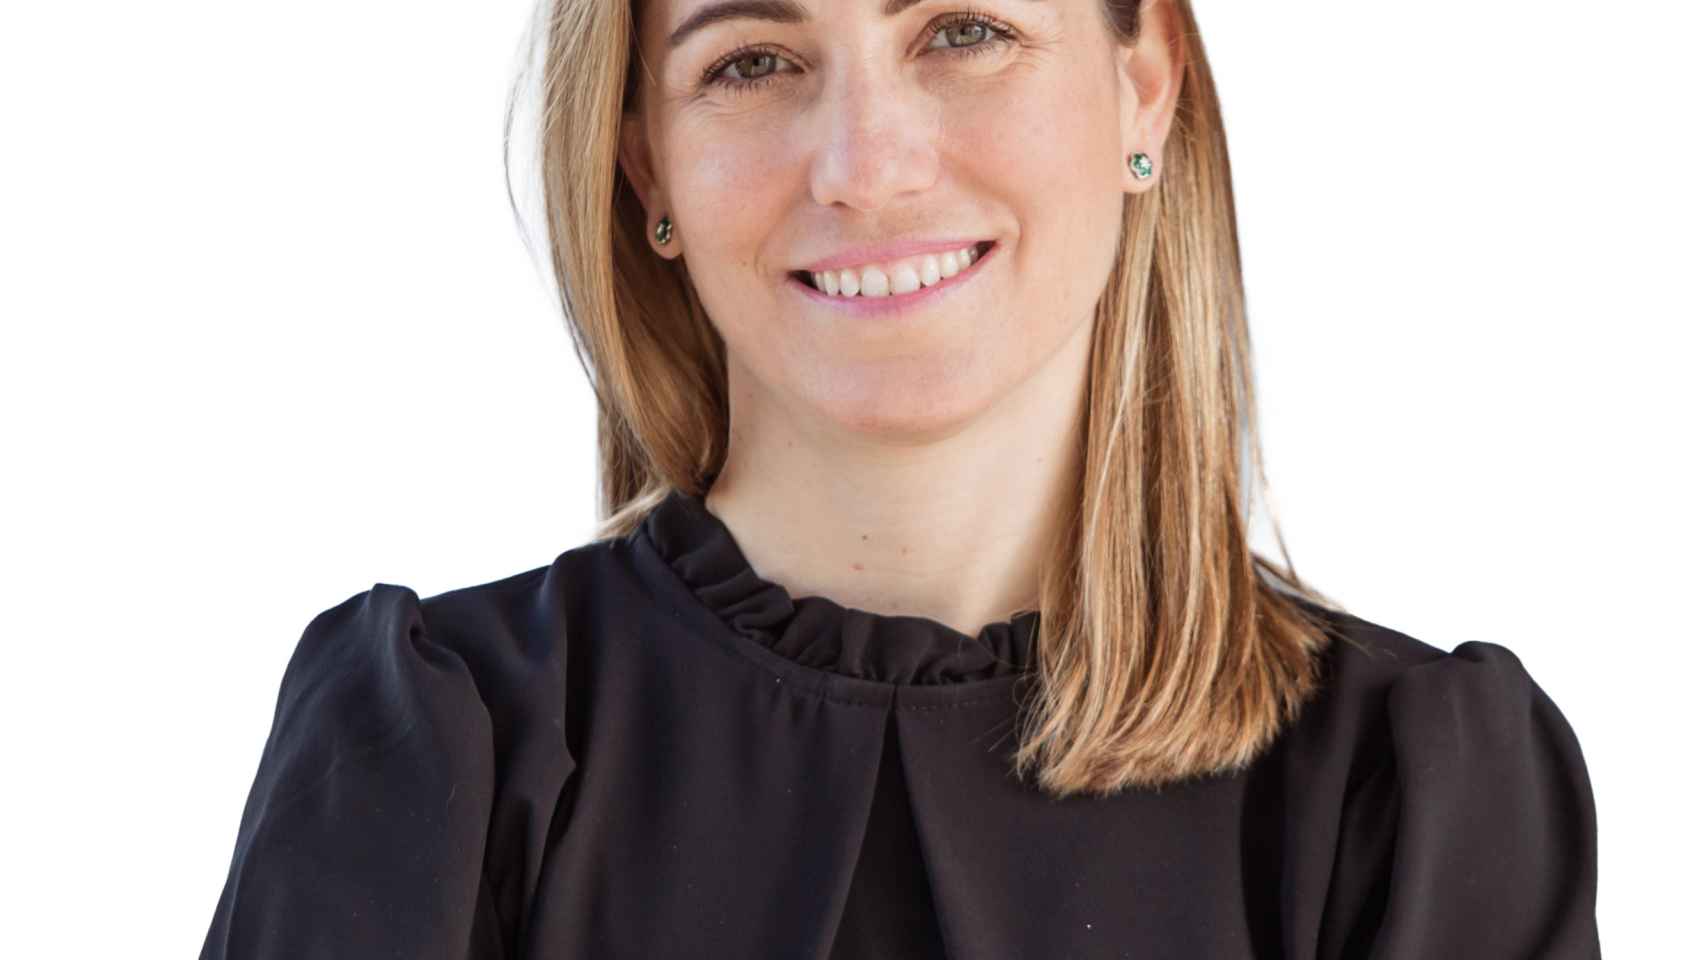 La directora de Transformación Global de Iberdrola, Margarita Fernández de Prada.